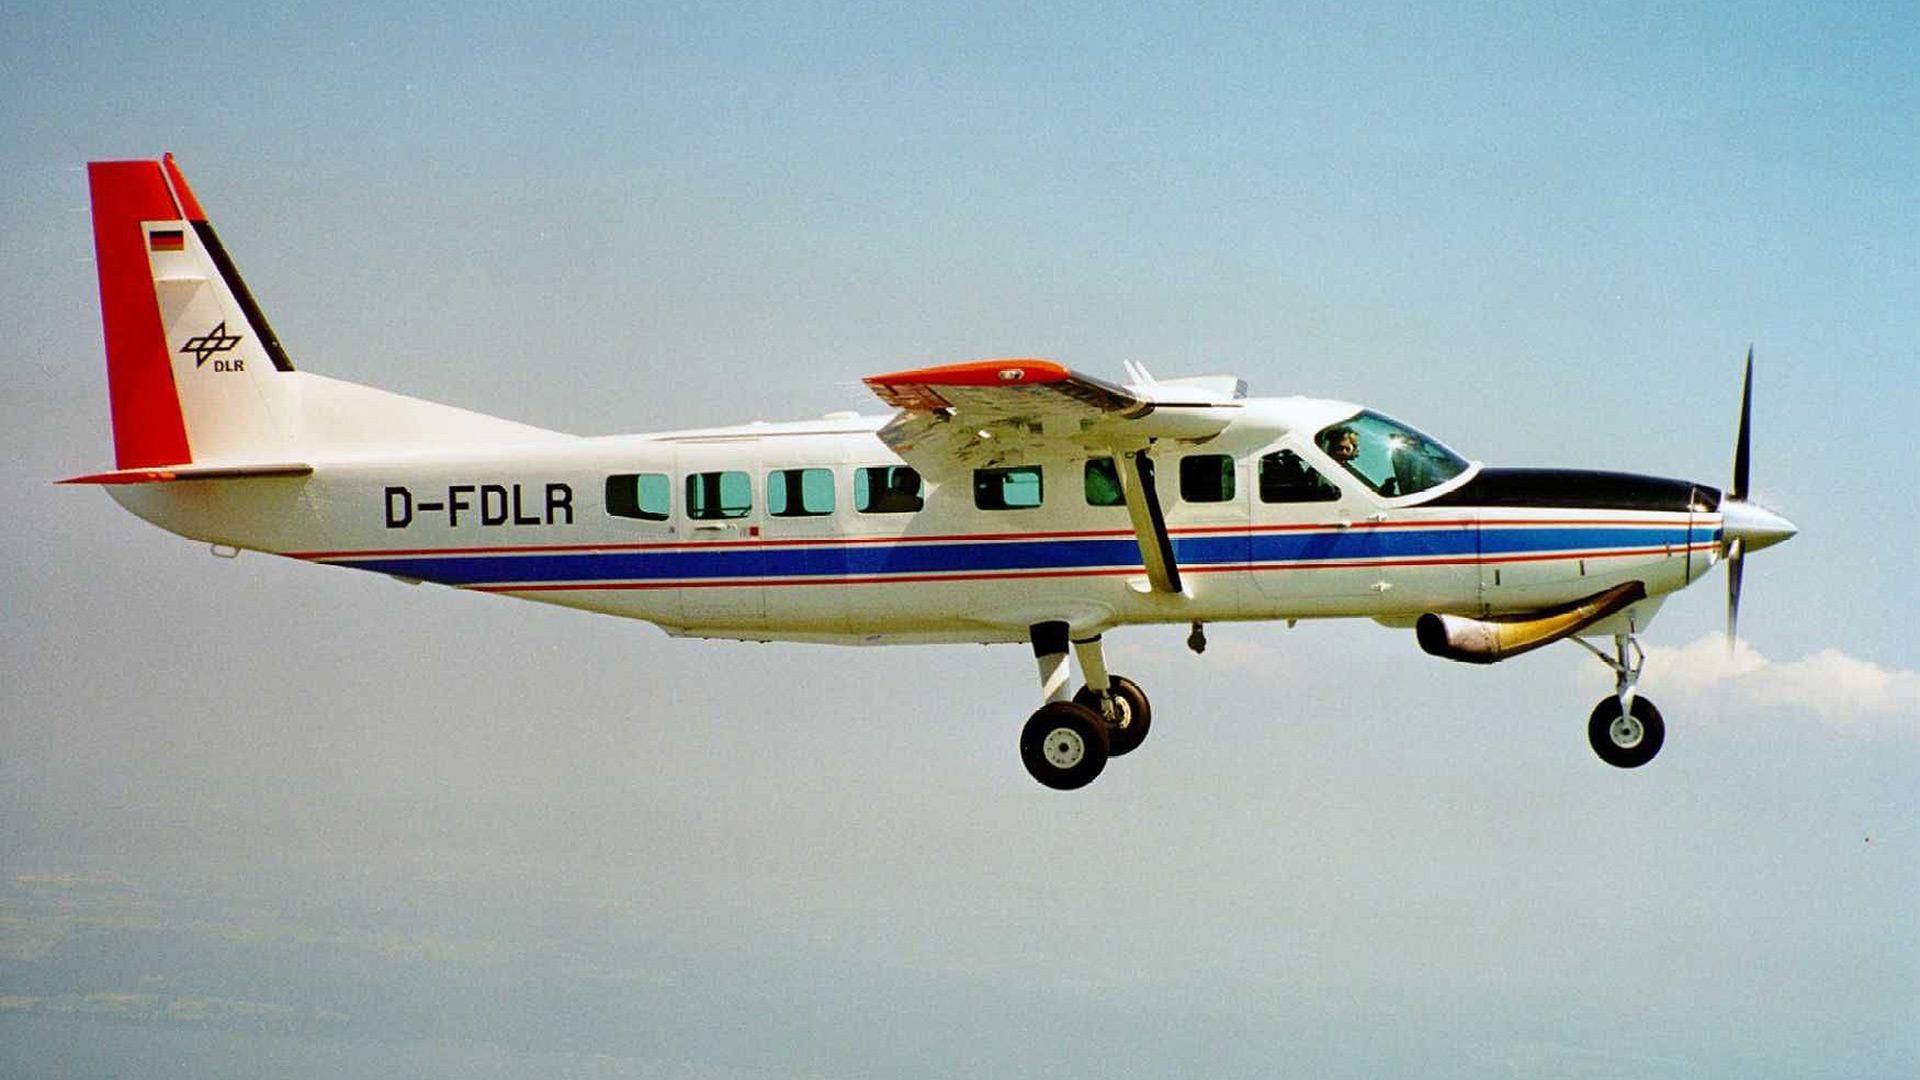 DLR-Forschungsflugzeug Cessna 208